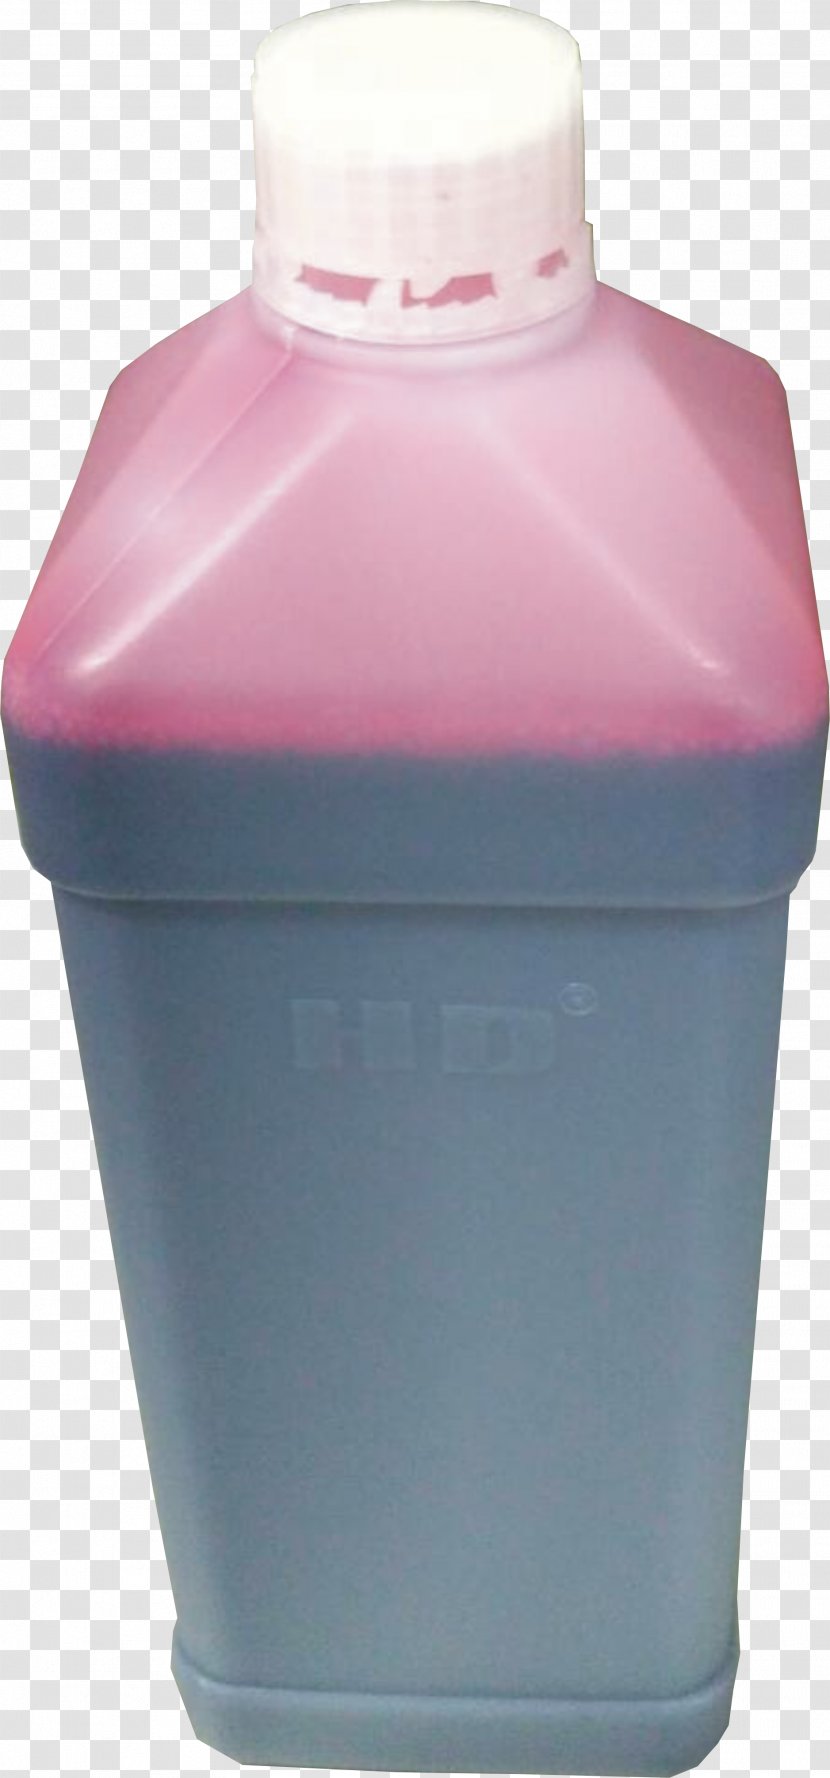 Product Design Lid Purple Plastic - Ink Splatter Transparent PNG